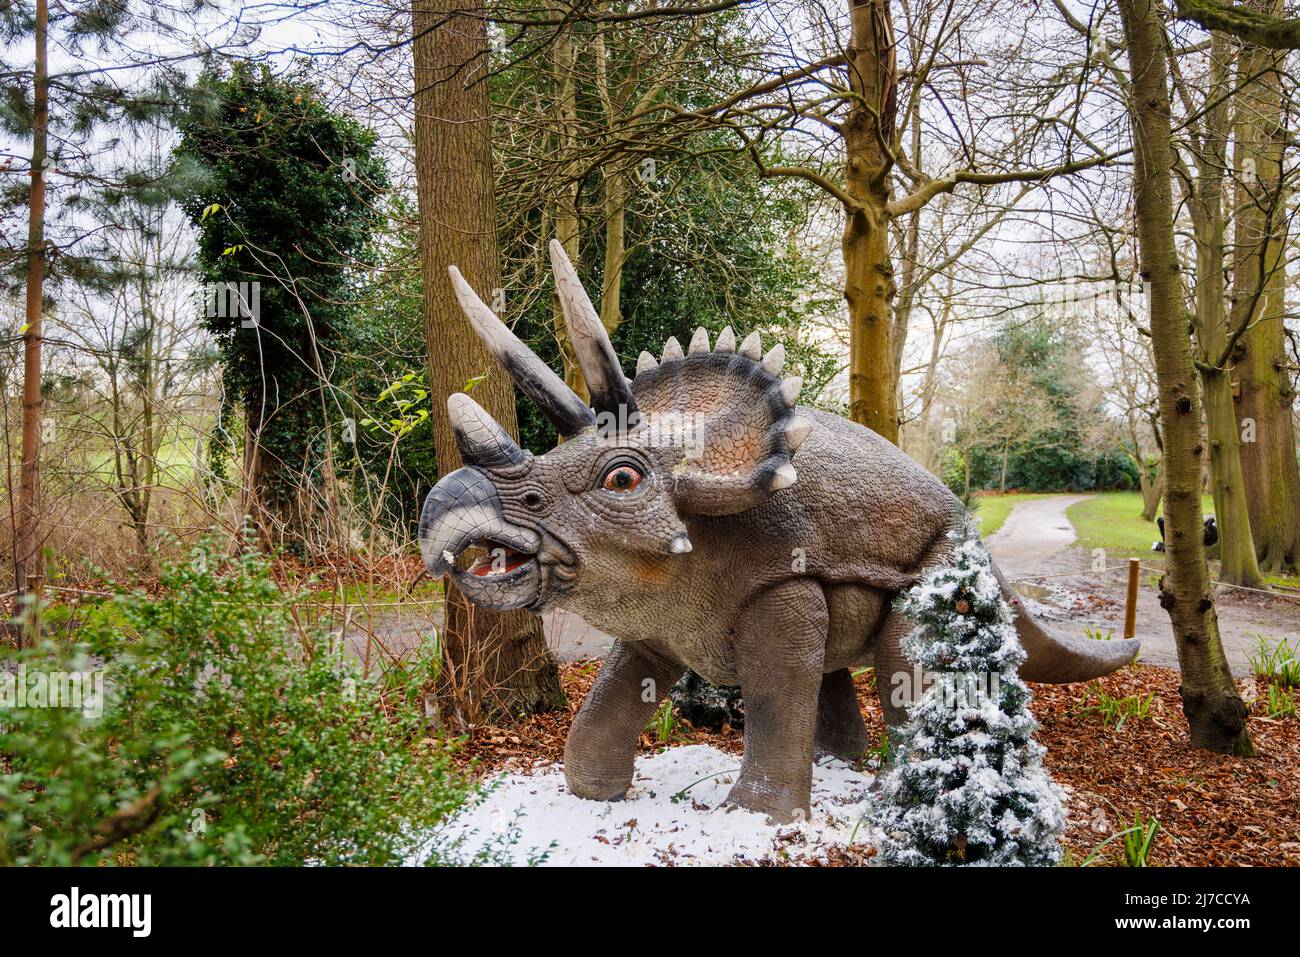 Modell eines Triceratops herbivore Dinosauriers aus der Kreidezeit bei der jährlichen Snowsaurus-Veranstaltung für Familien im Painshill Park, Cobham, Surrey Stockfoto